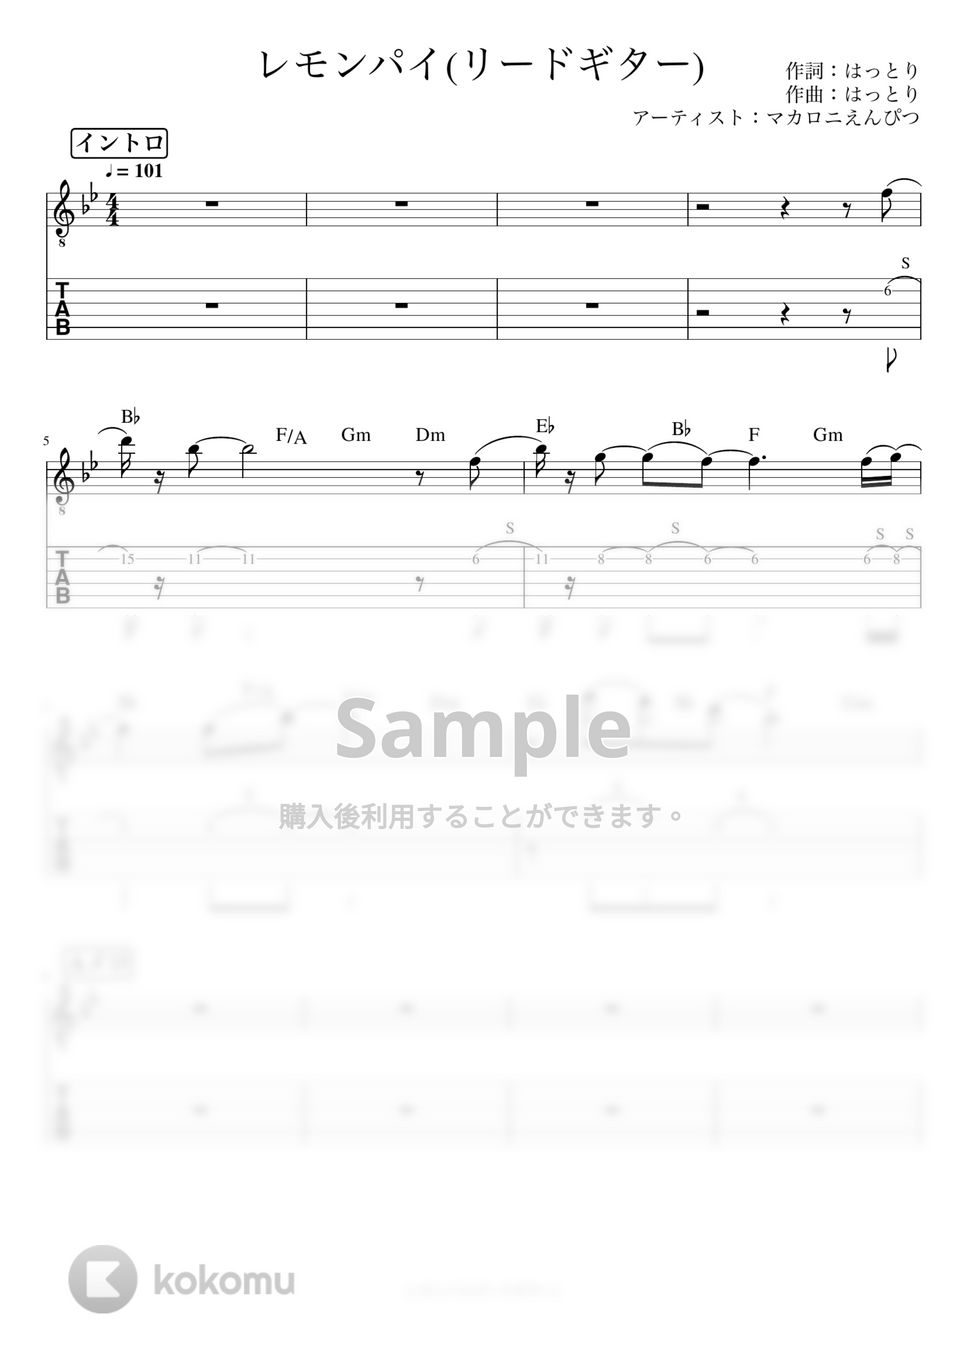 マカロニえんぴつ - レモンパイ (リードギター) by J-ROCKチャンネル